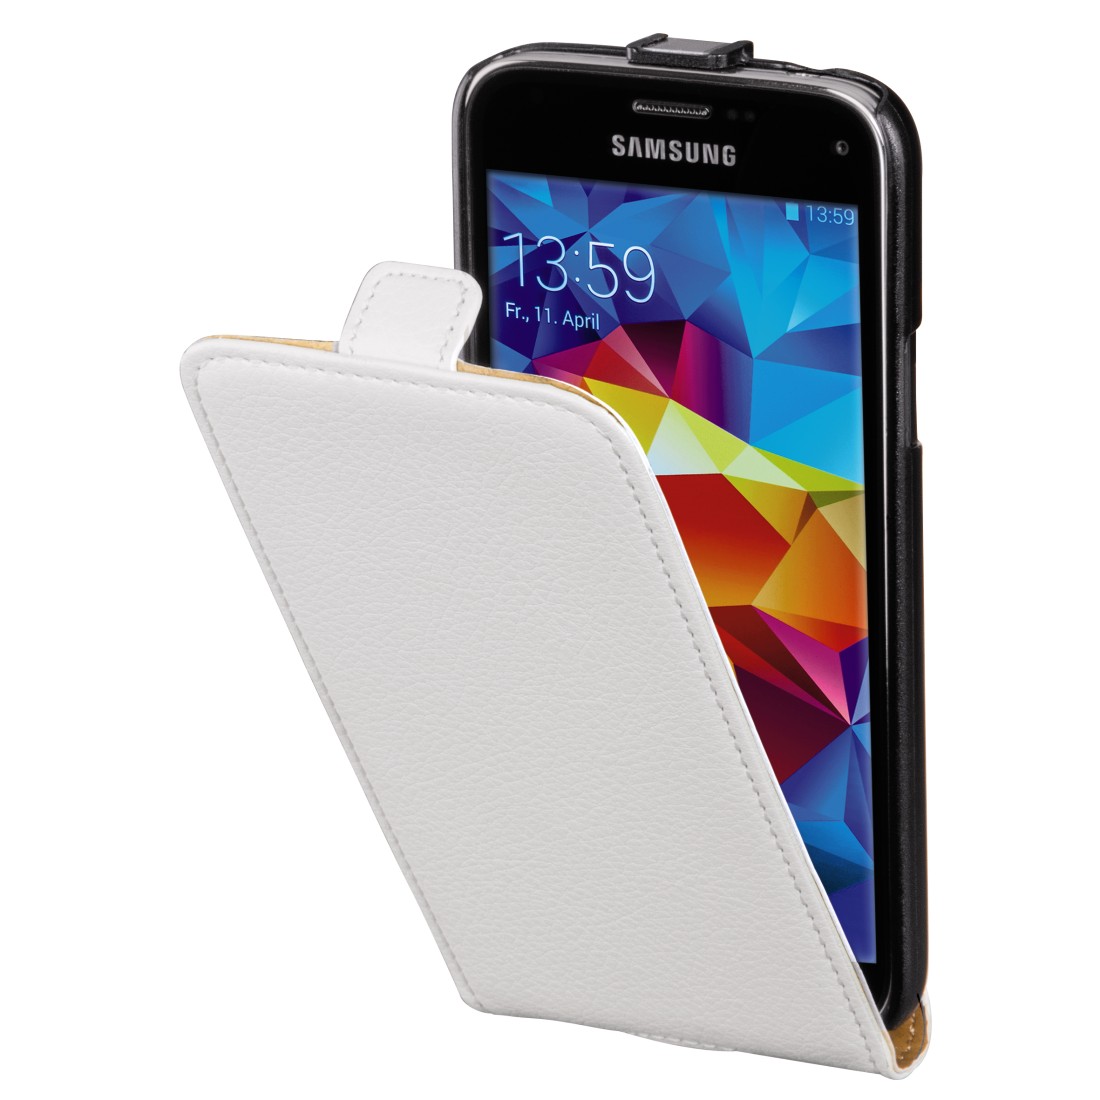 00134119 Hama "Smart Case" Flap Case for Samsung Galaxy S5 mini, white